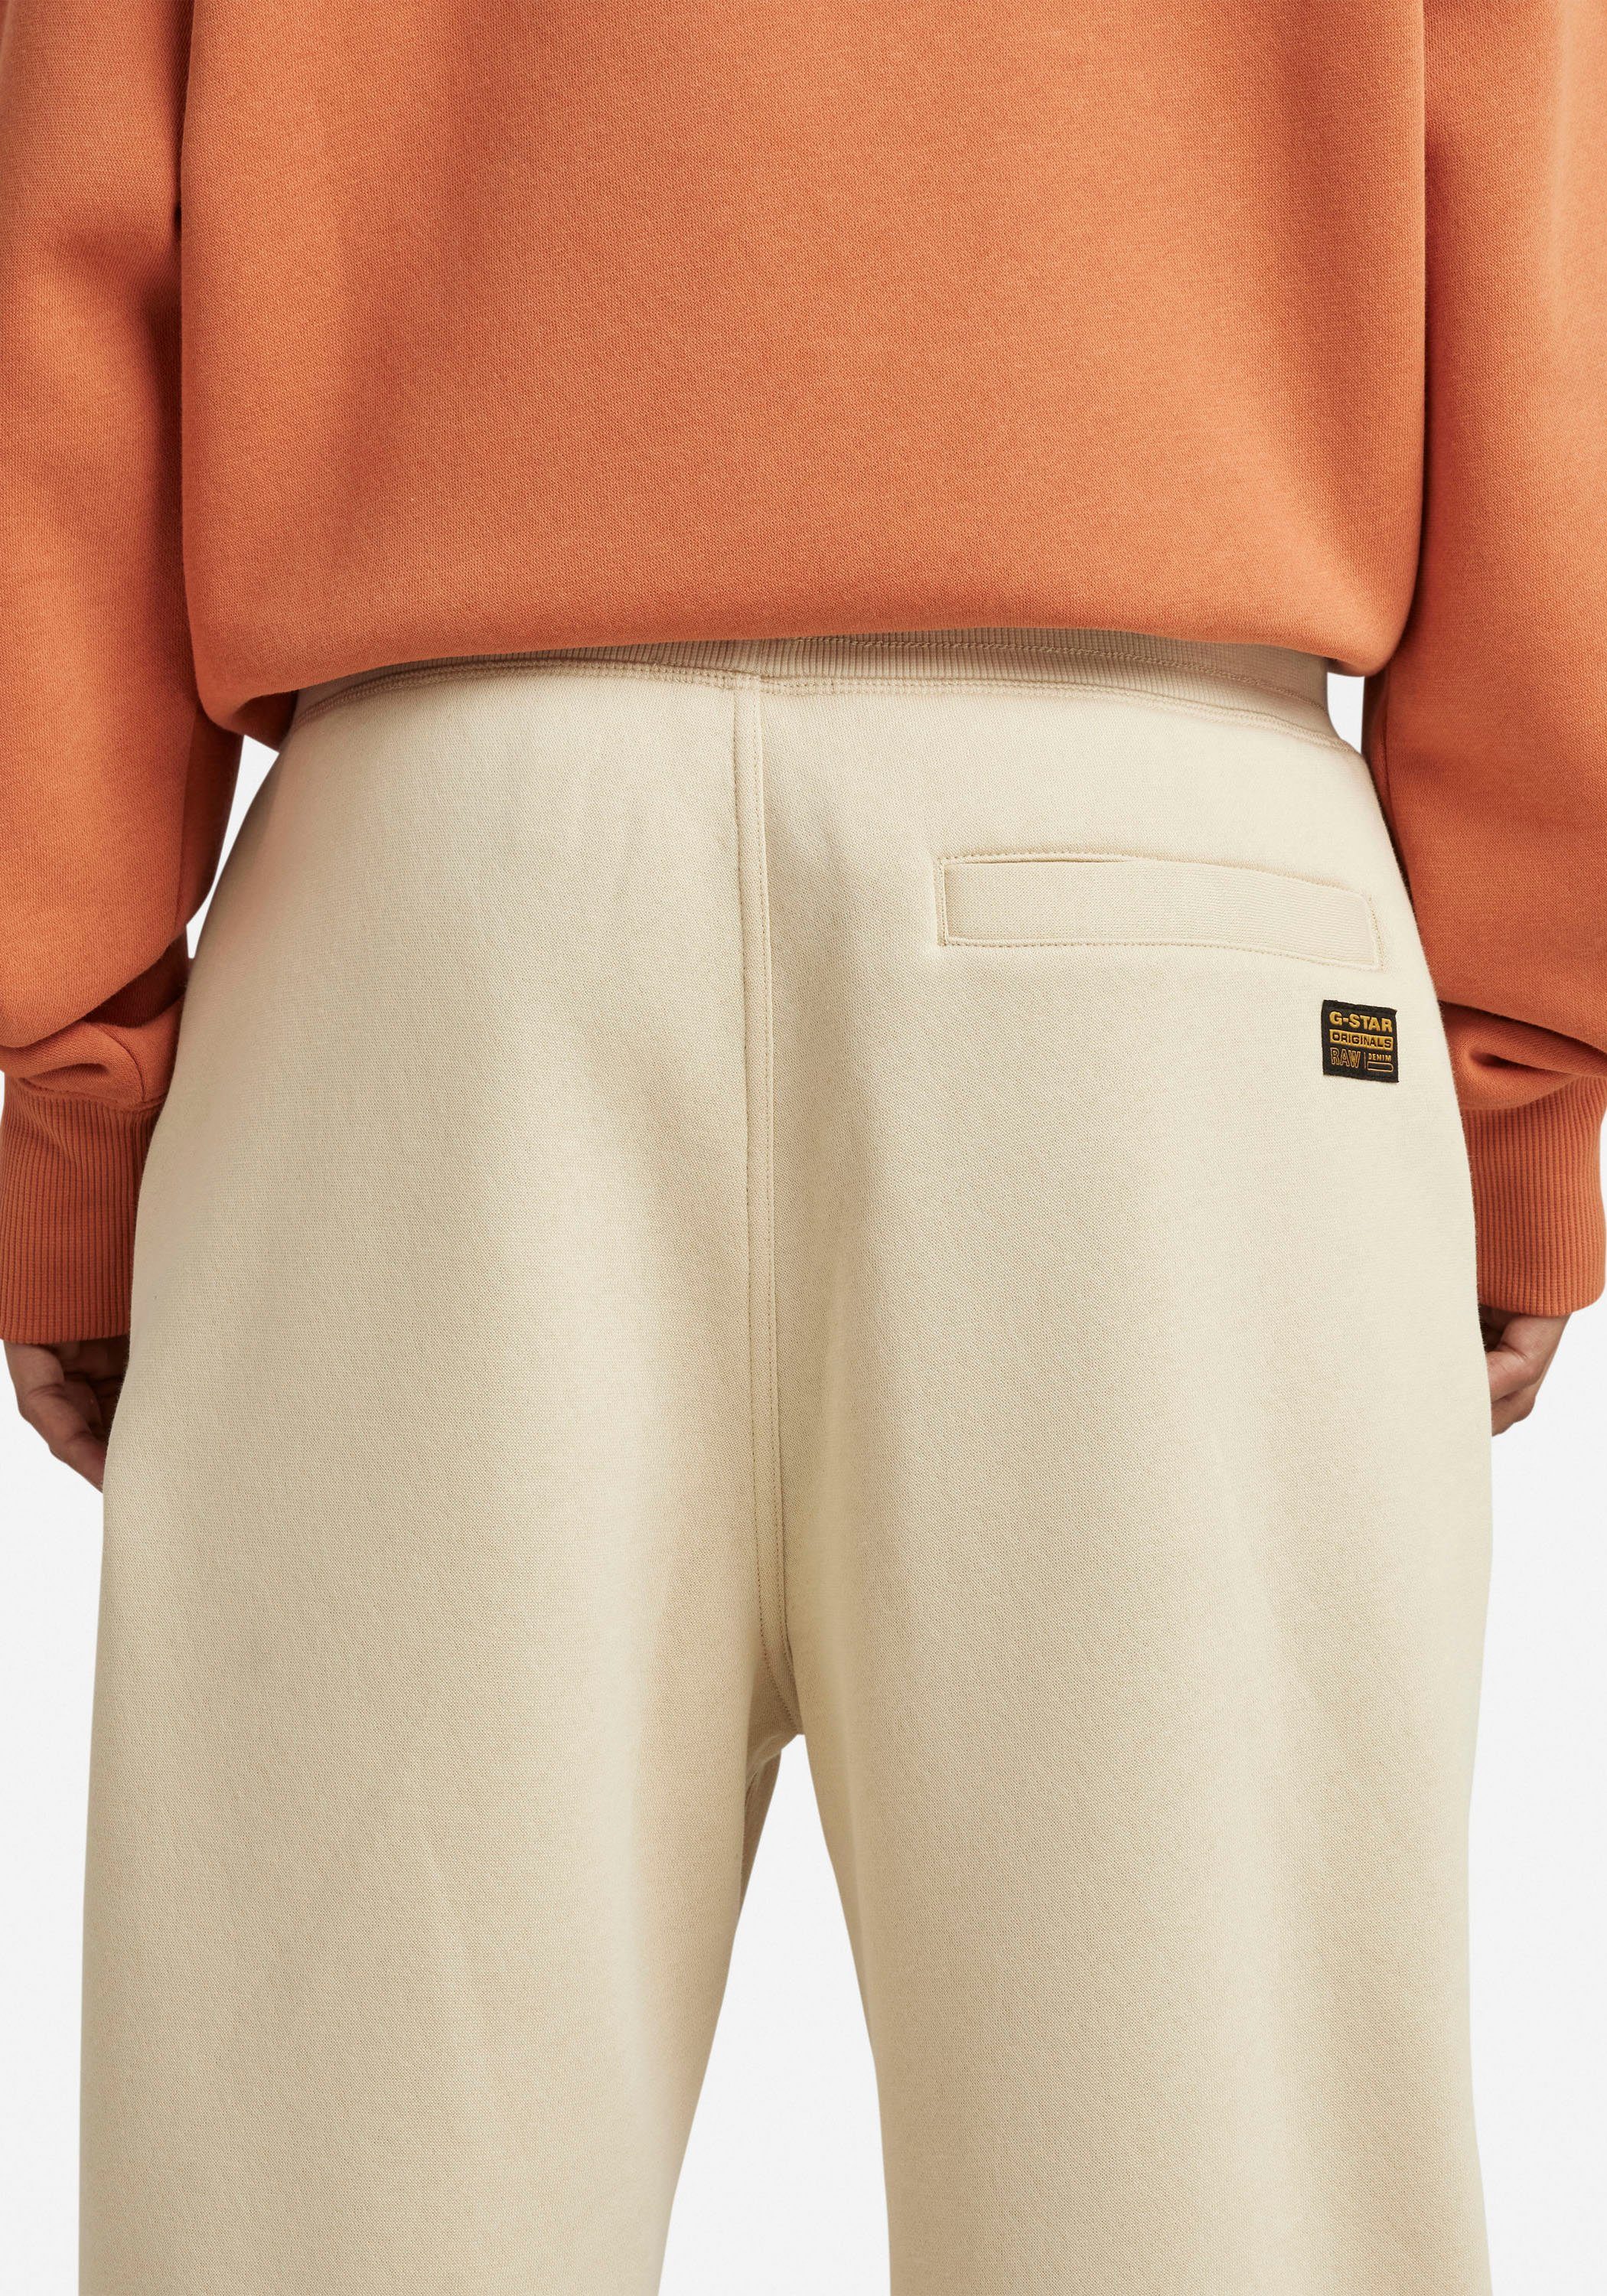 G-Star RAW Sweatpants Bund brown rice und Tunnelzug Premium mit elastischen Sweathose core 2.0